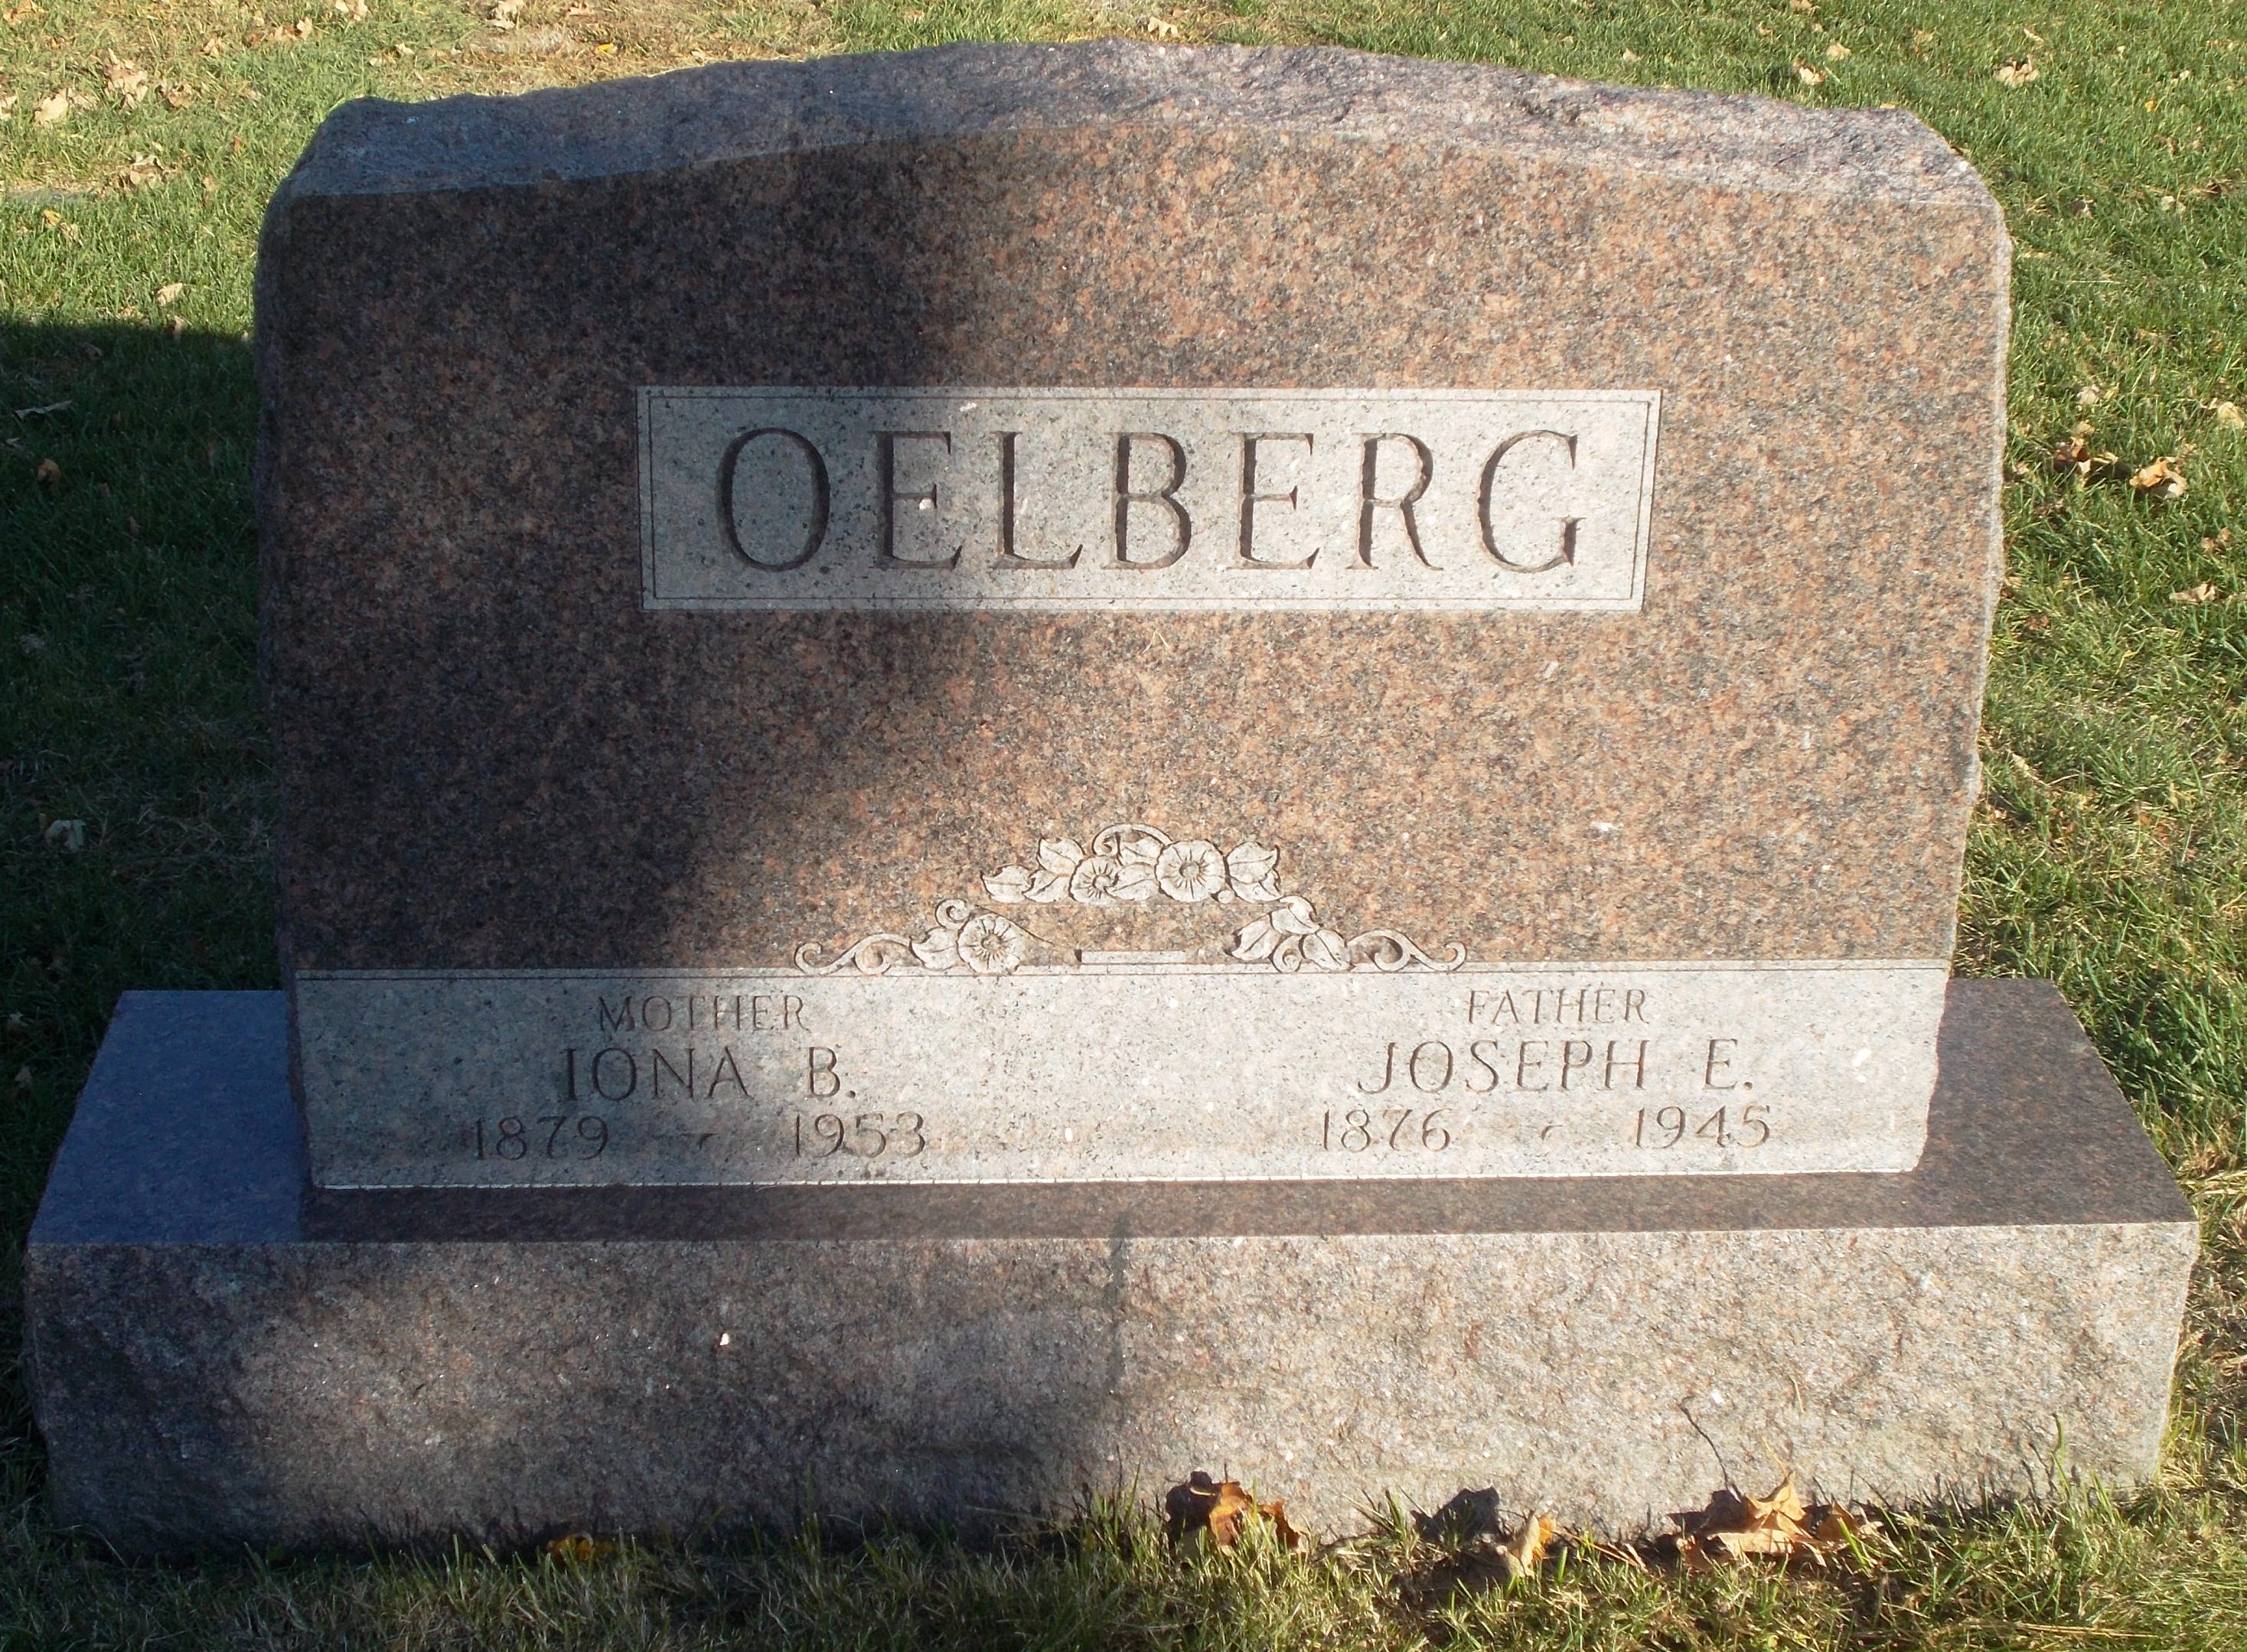 Iona B Oelberg